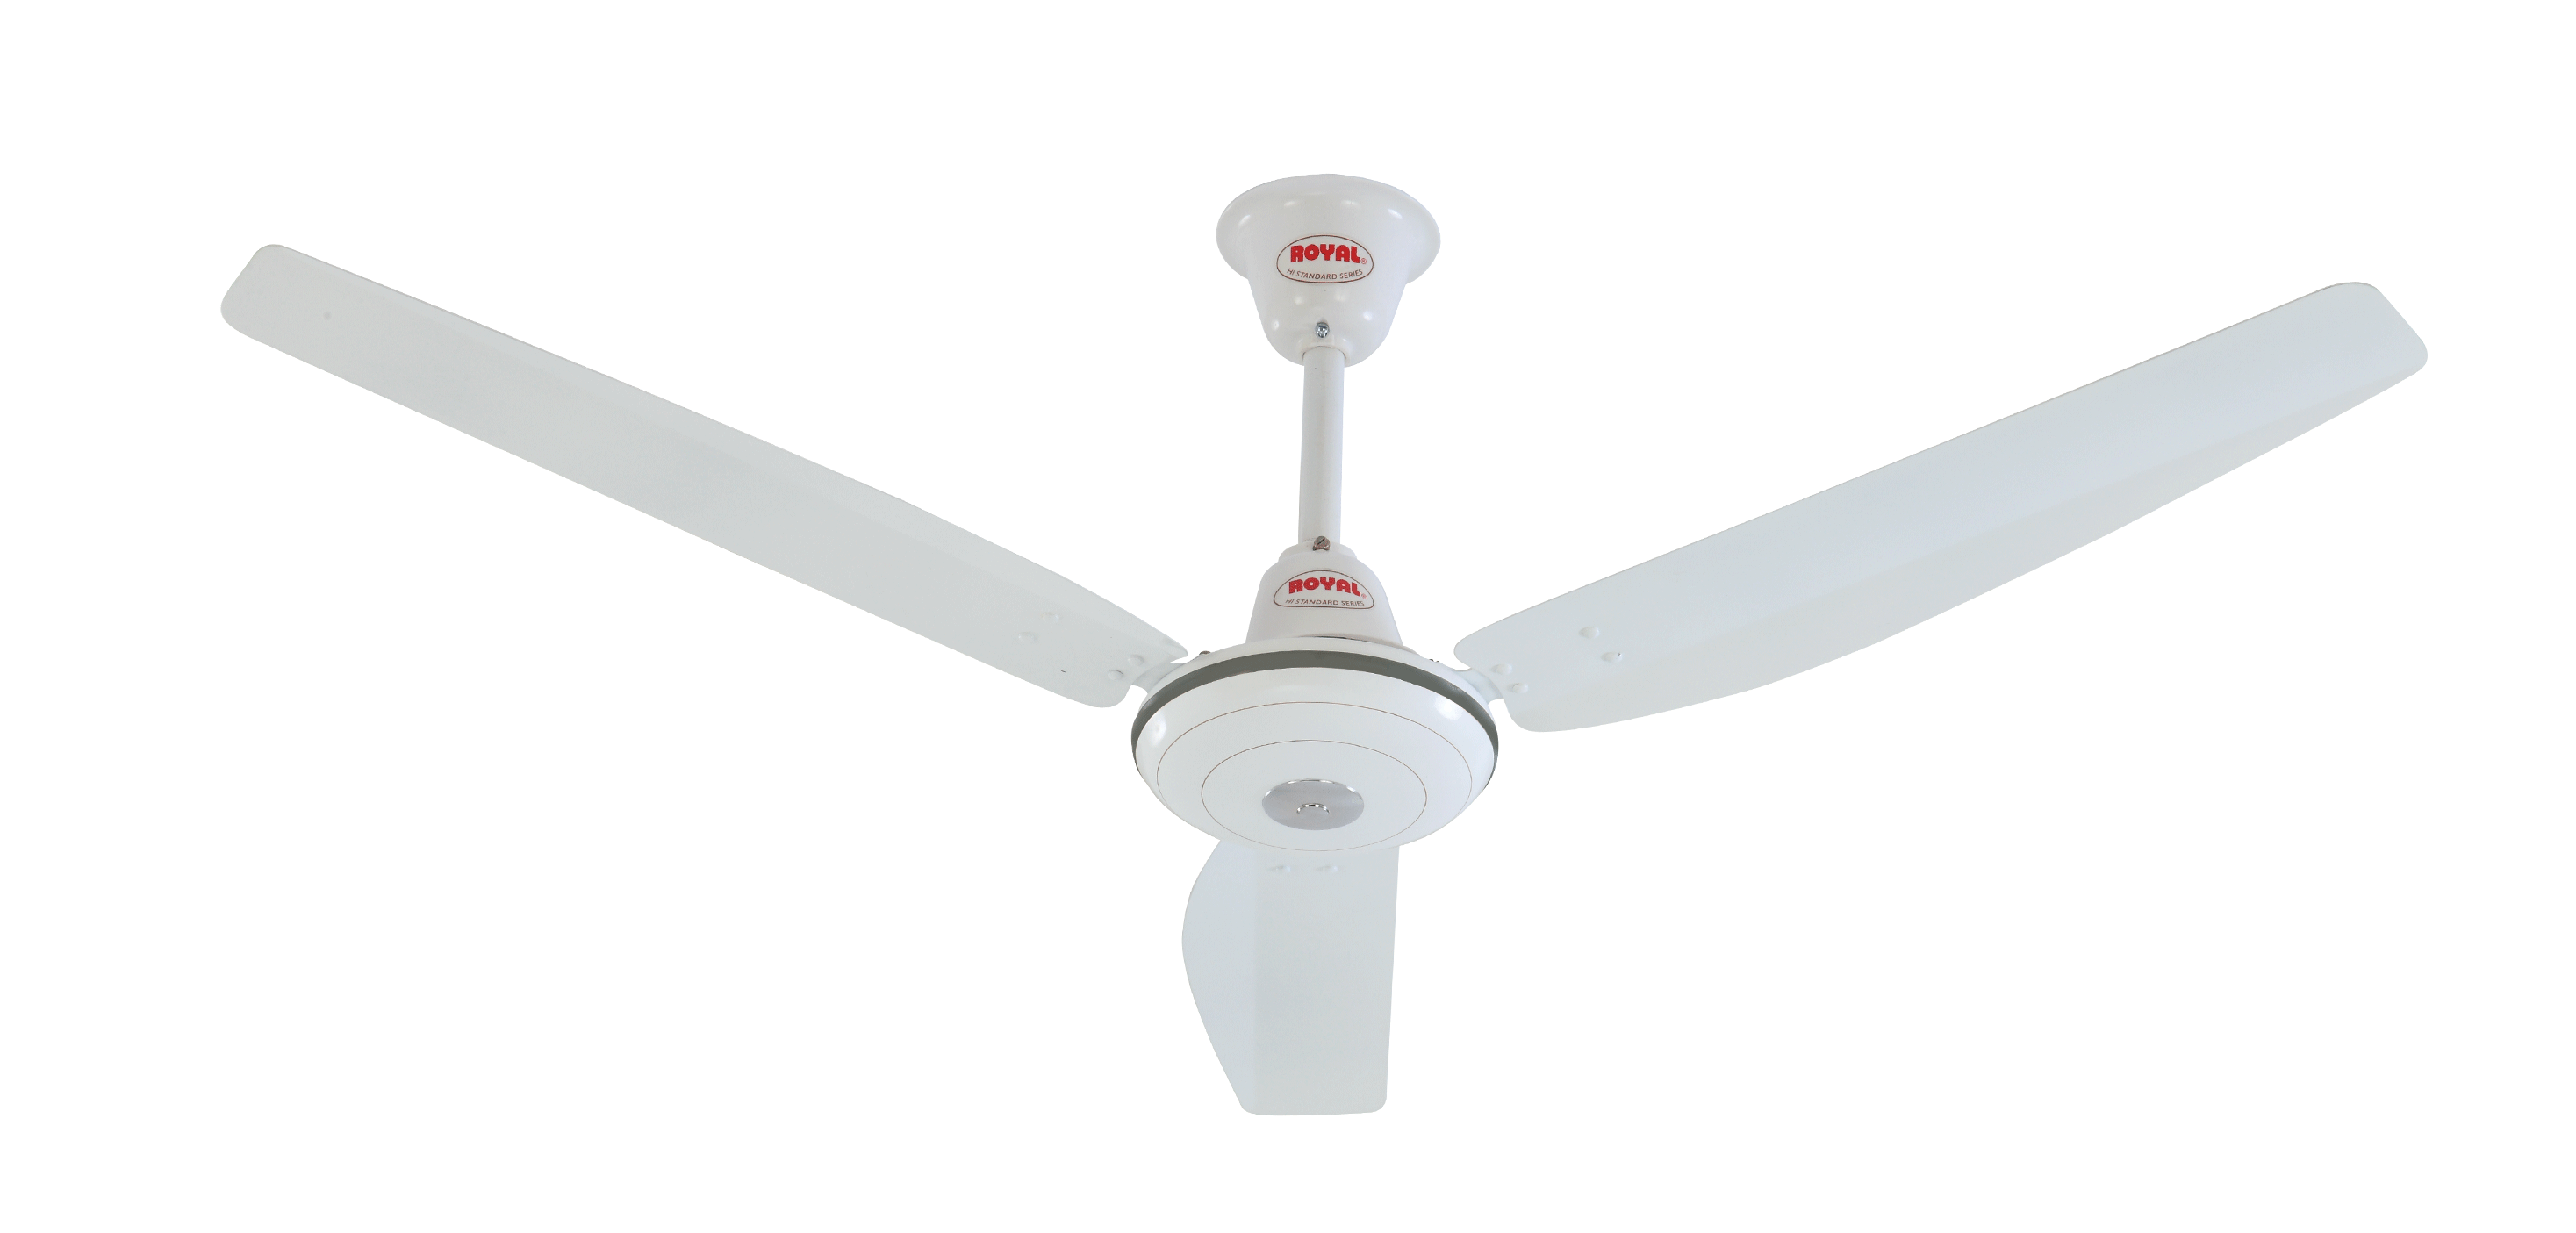 Royal Hi-Standard Ceiling Fan